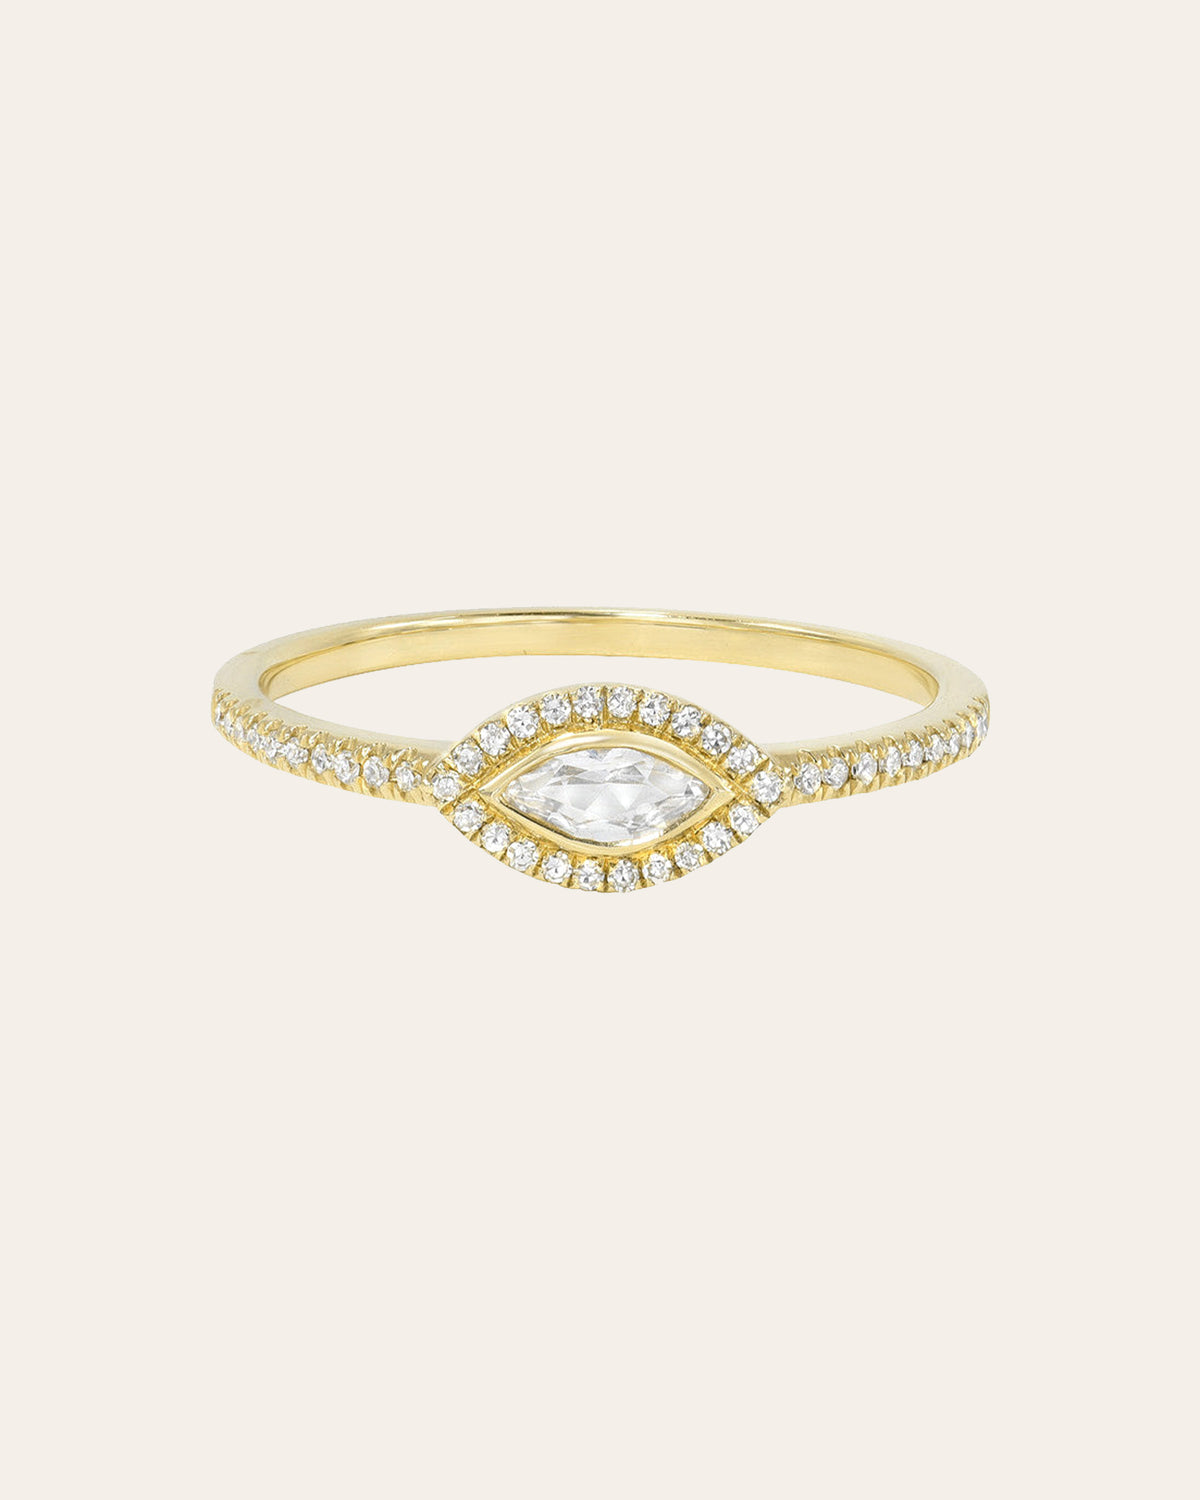 White Topaz Marquise Diamond Ring